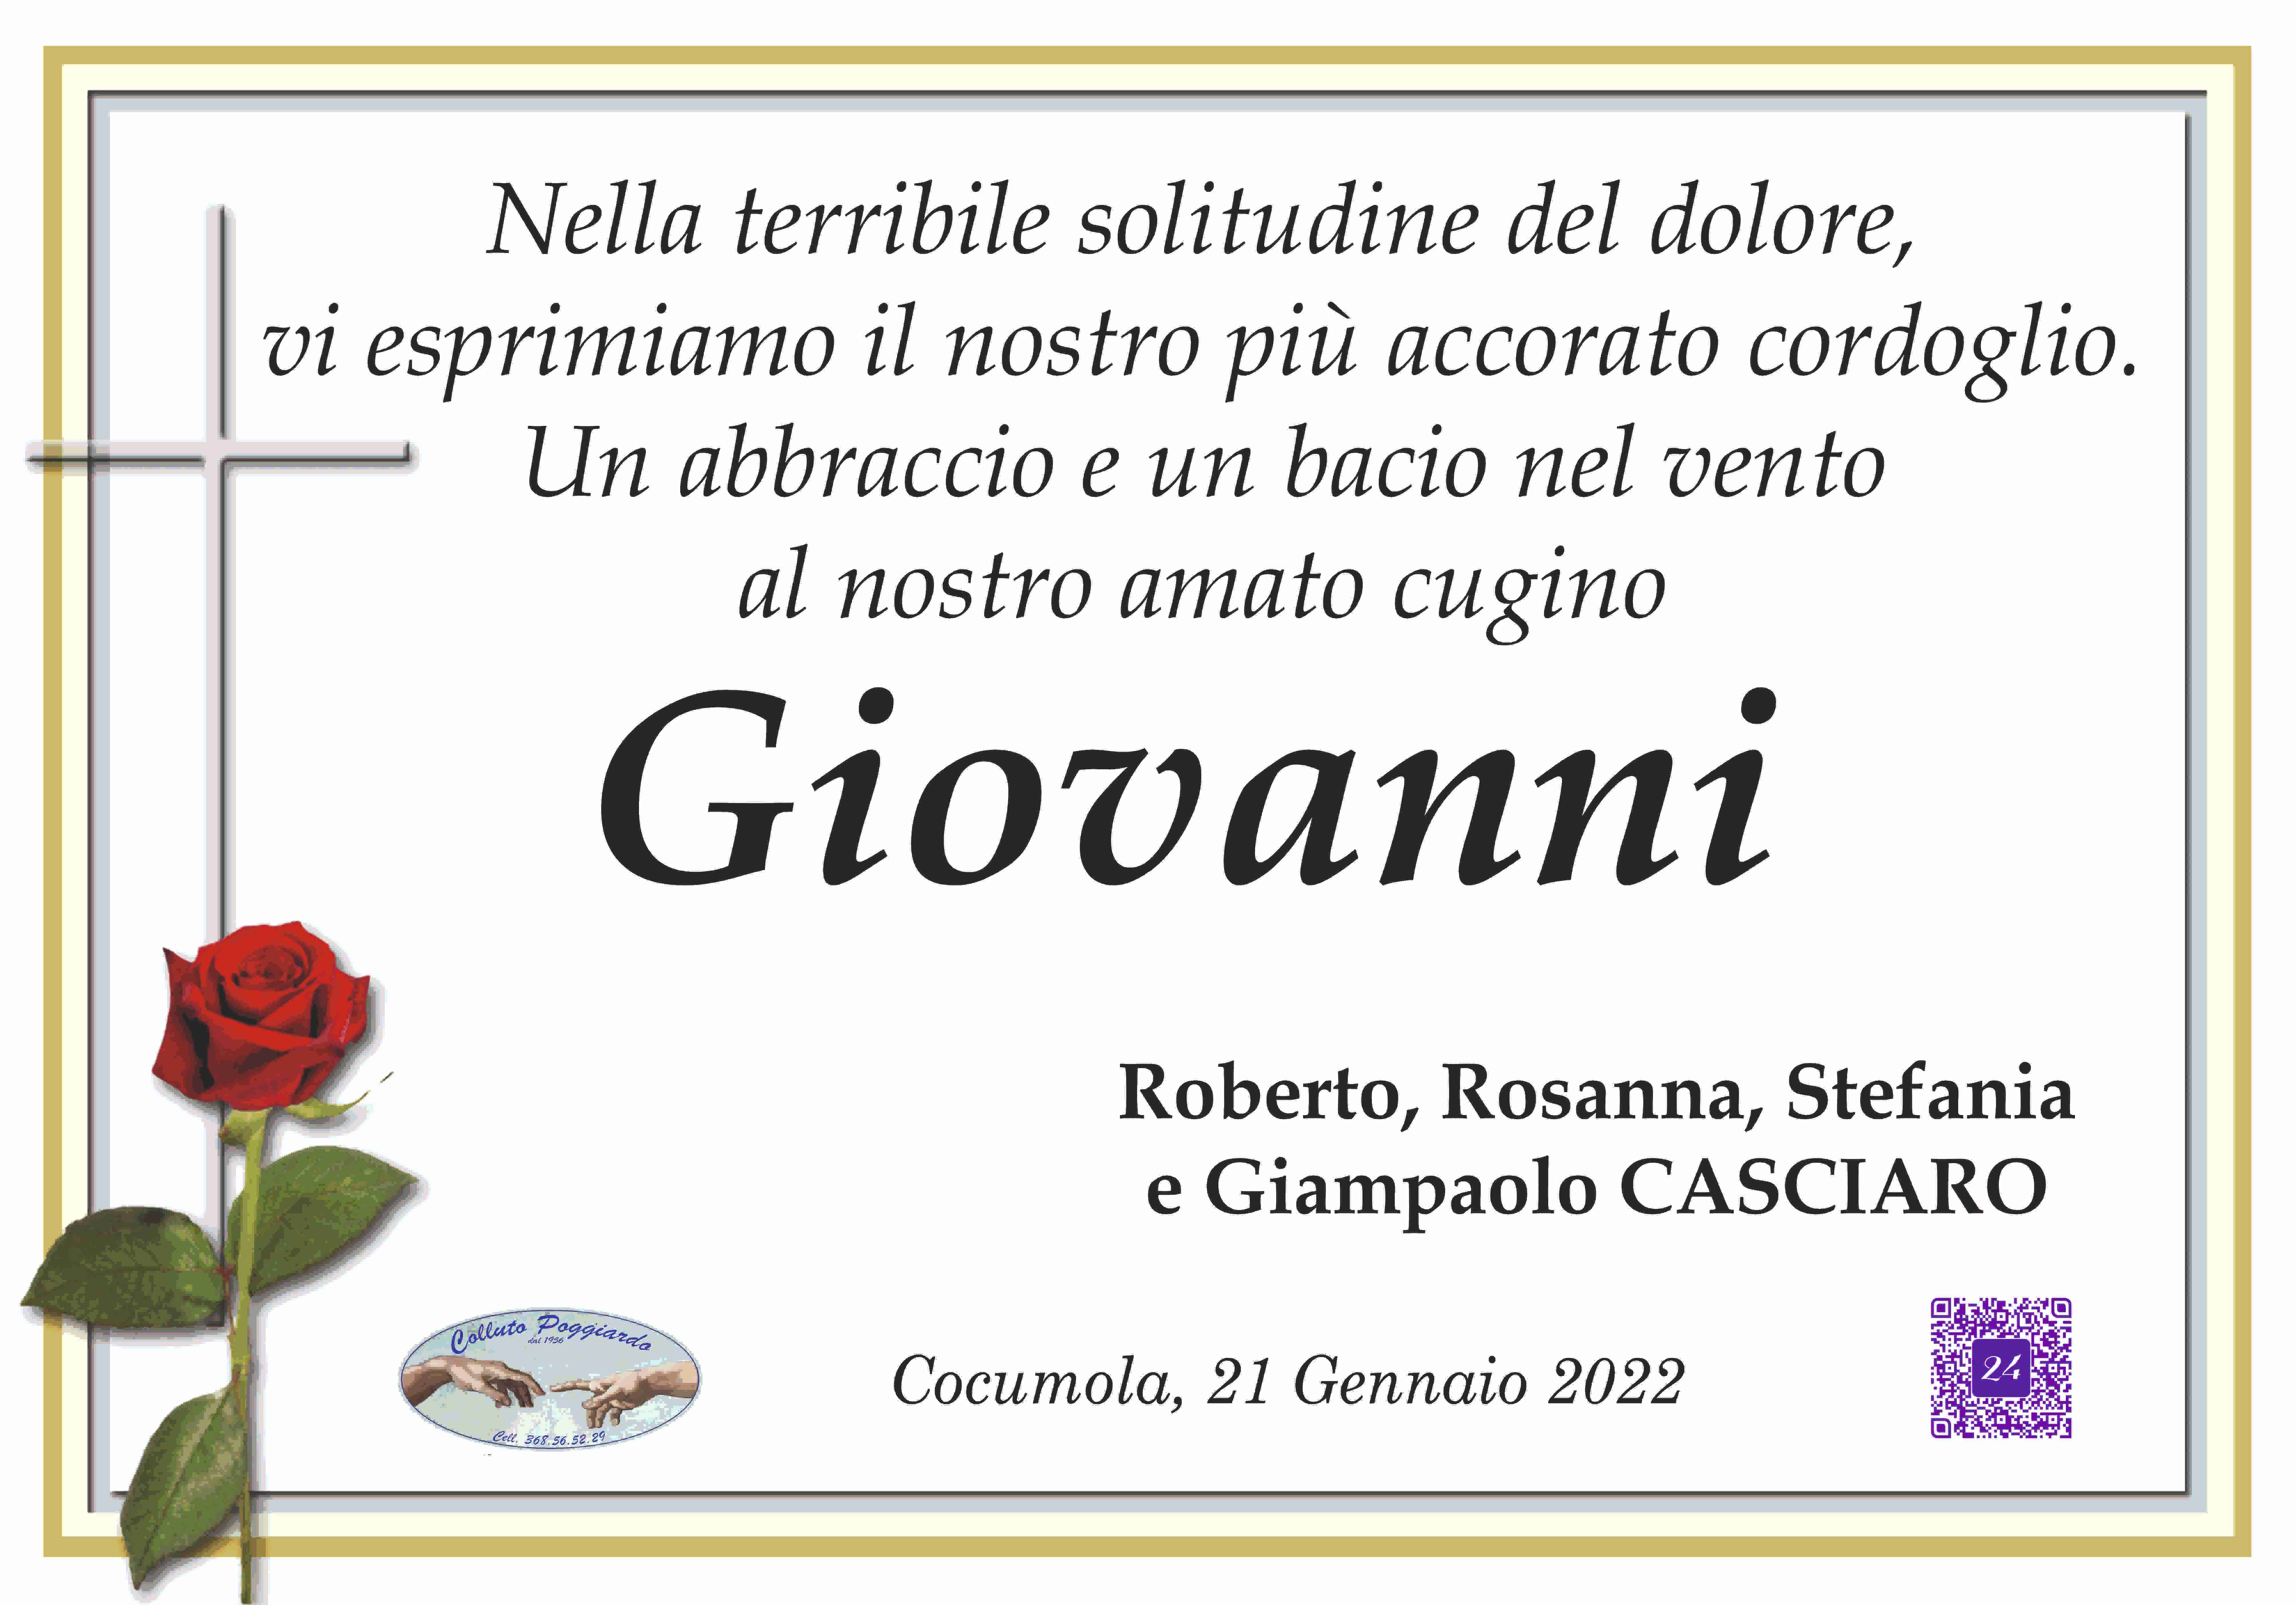 Giovanni Casciaro